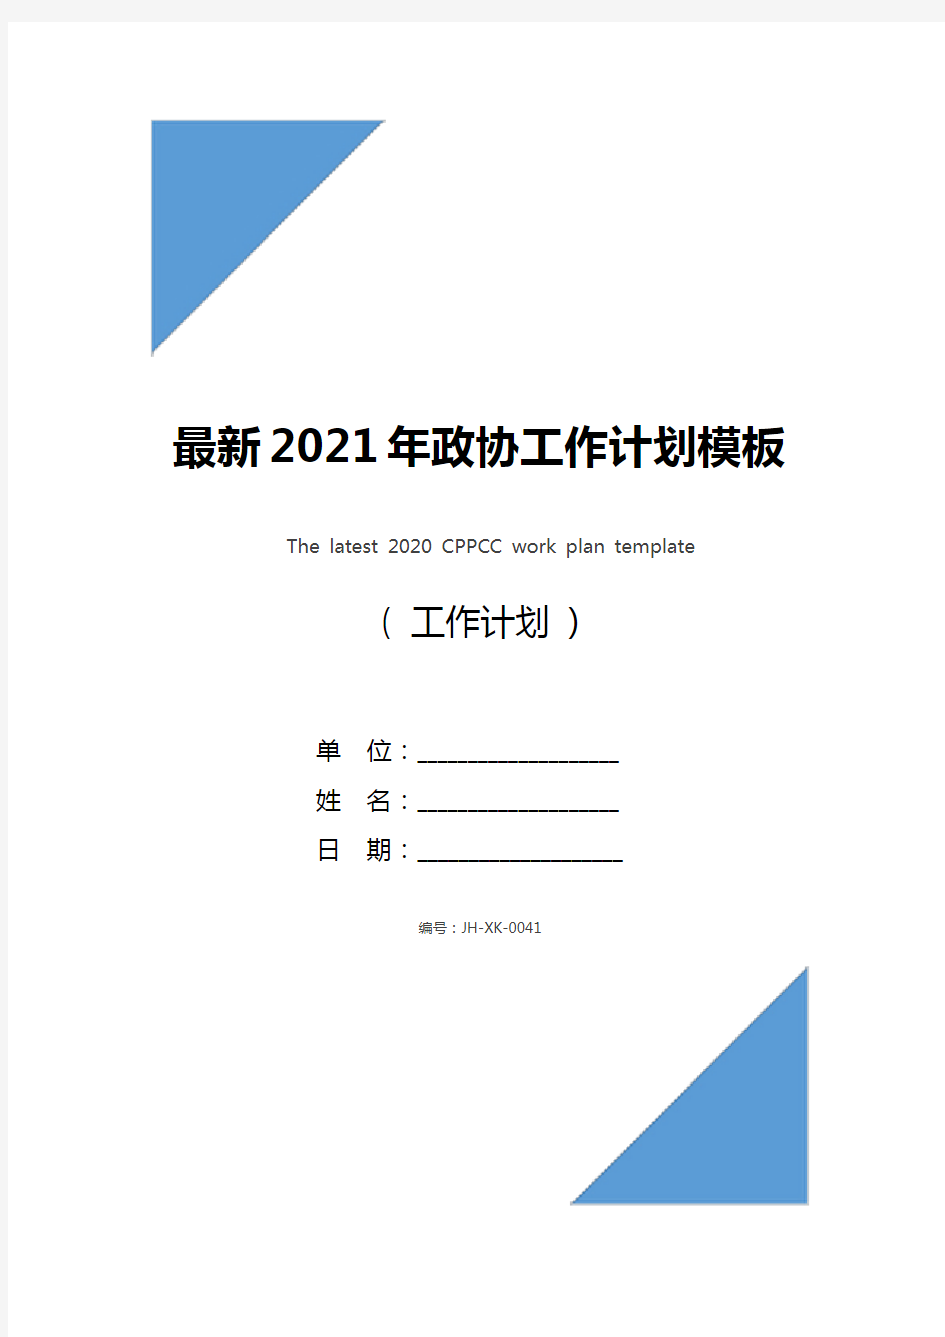 最新2021年政协工作计划模板(最新版)